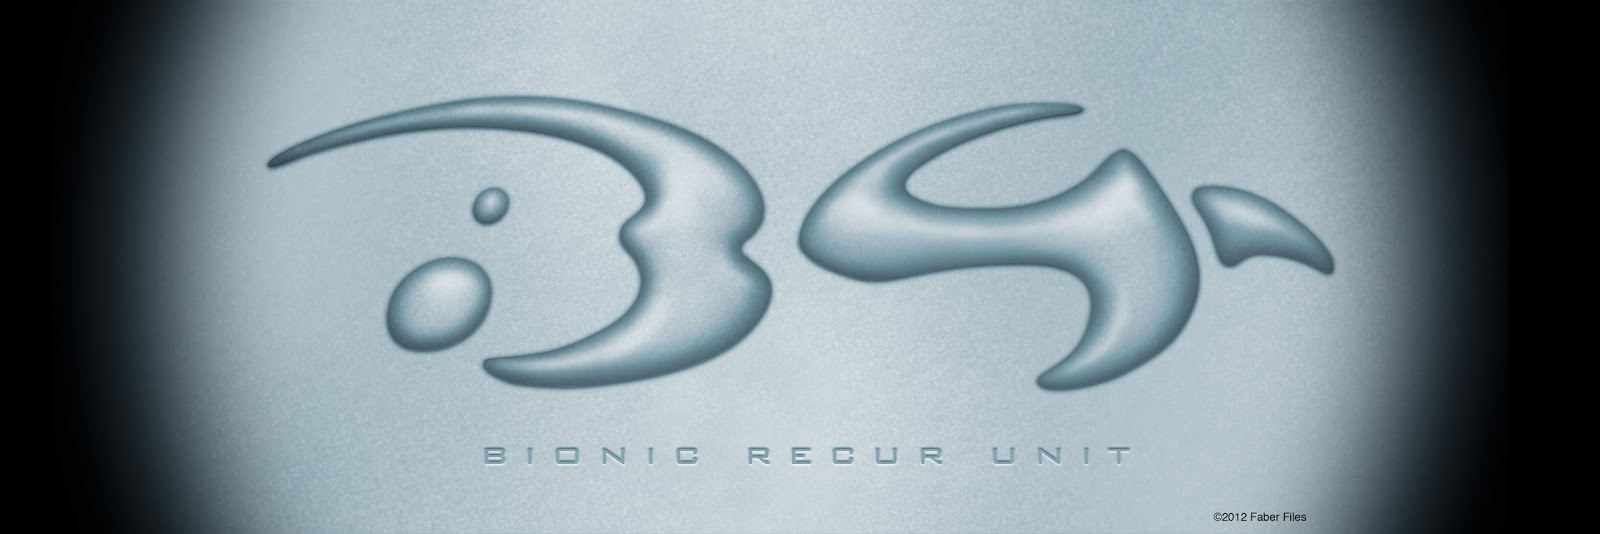 Bionicle Concept Arts B4+logo+fv